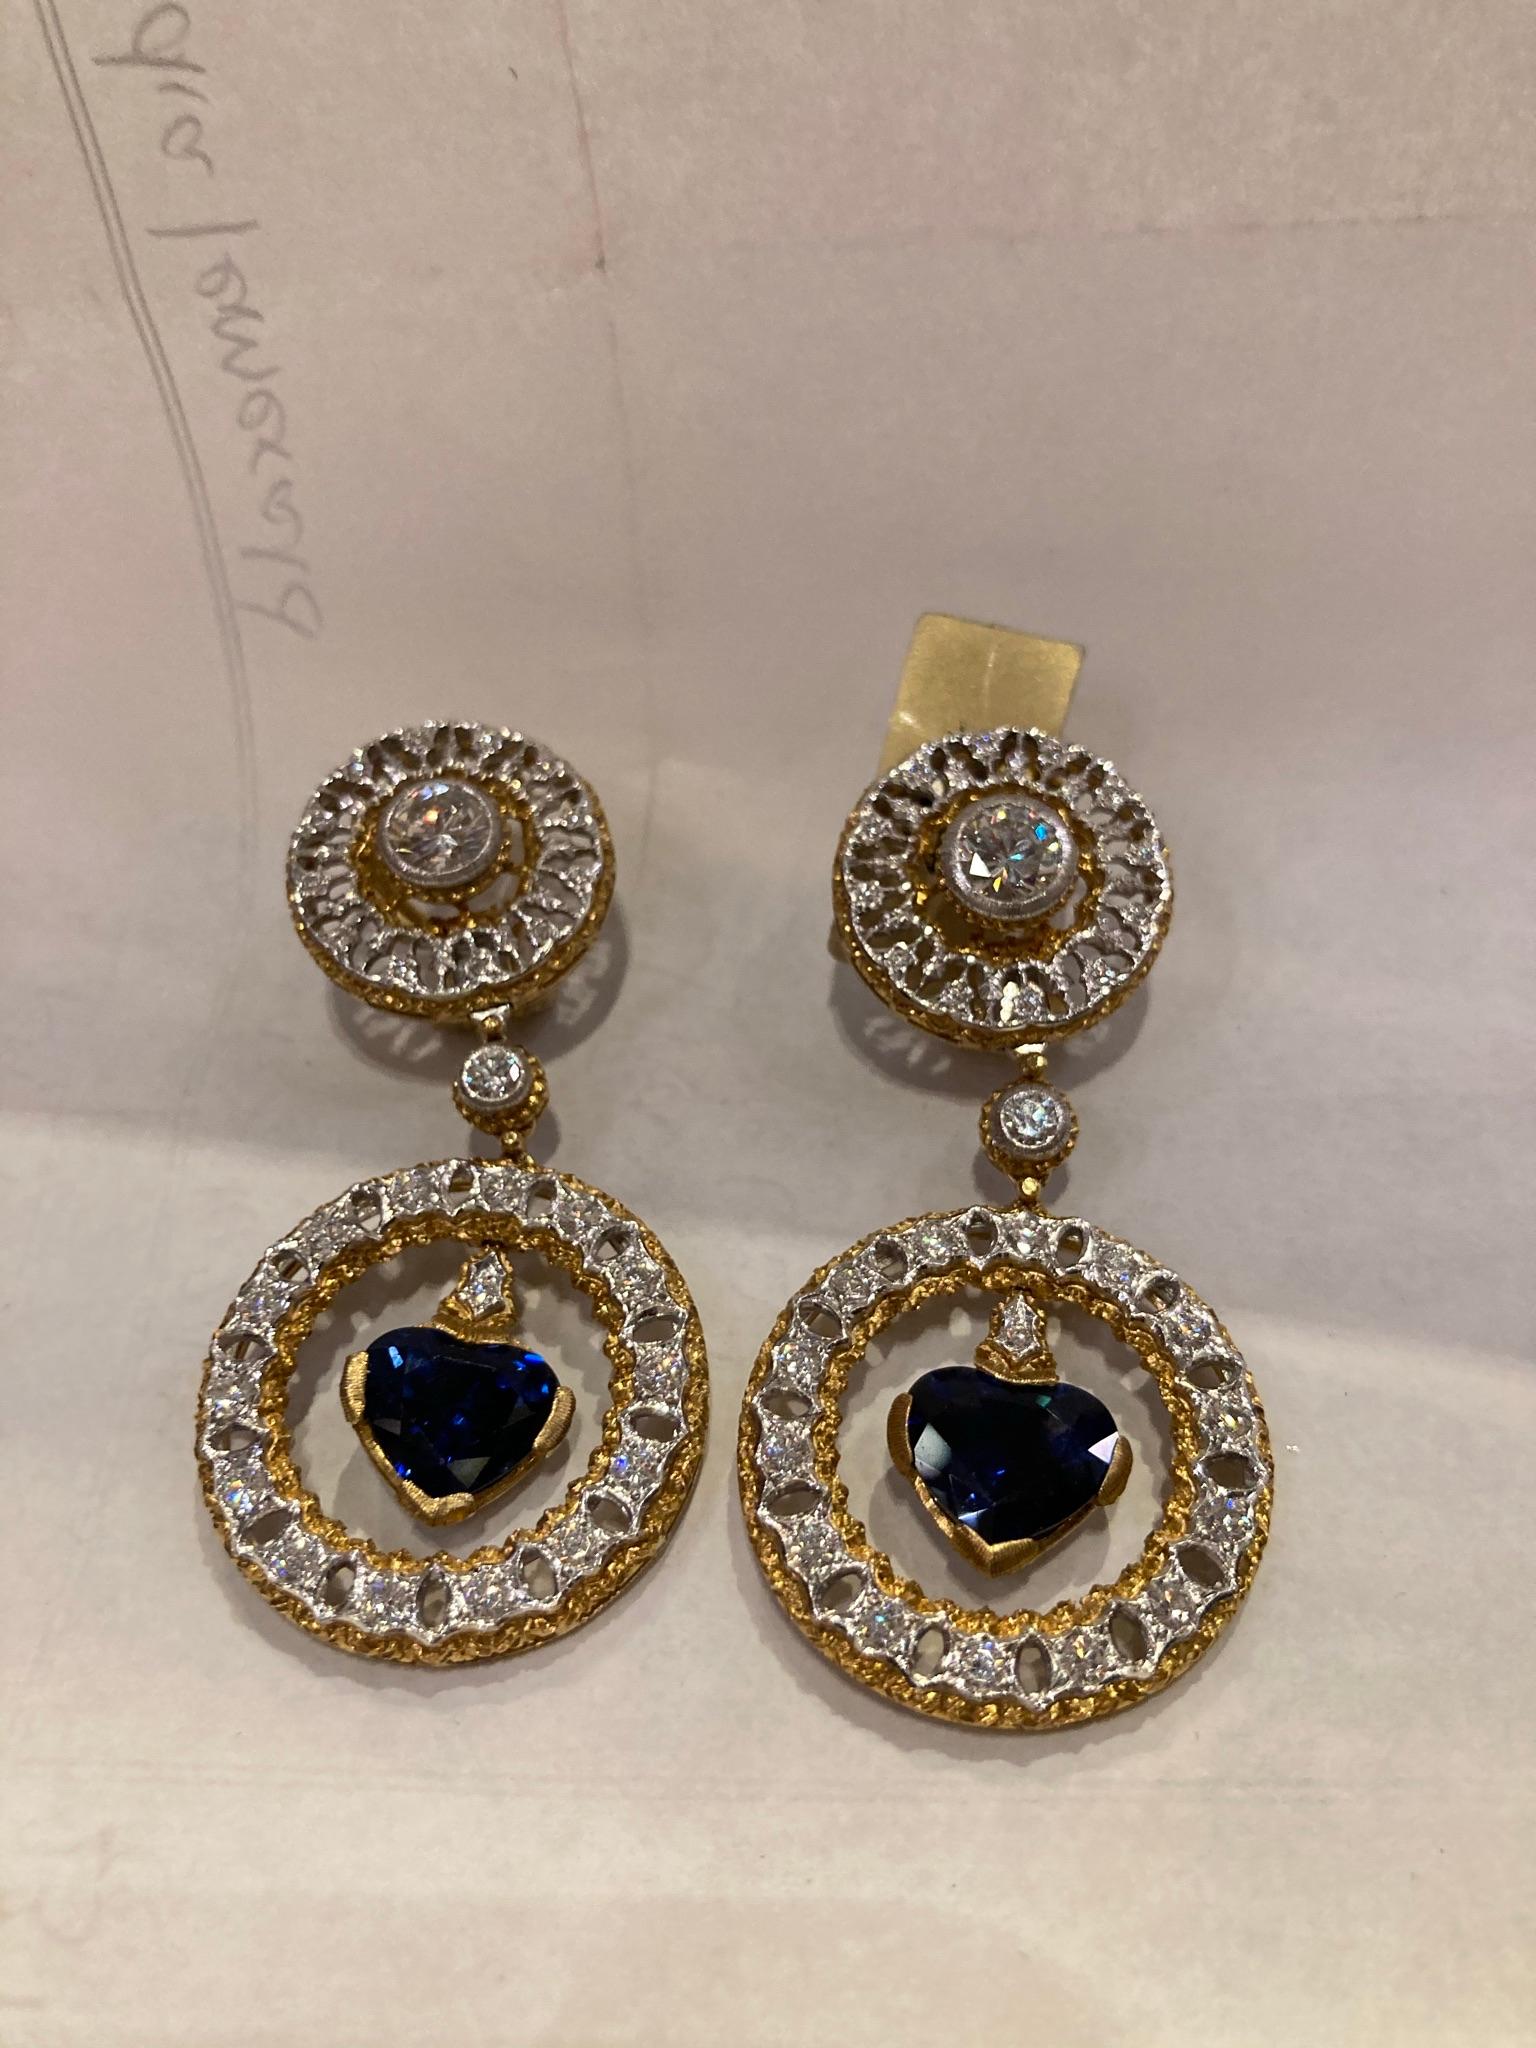 Ein prächtiges Paar Buccellati-Ohrringe mit 5,50 Karat herzförmigen Saphiren und Diamanten. Hergestellt in Italien, um 1970

